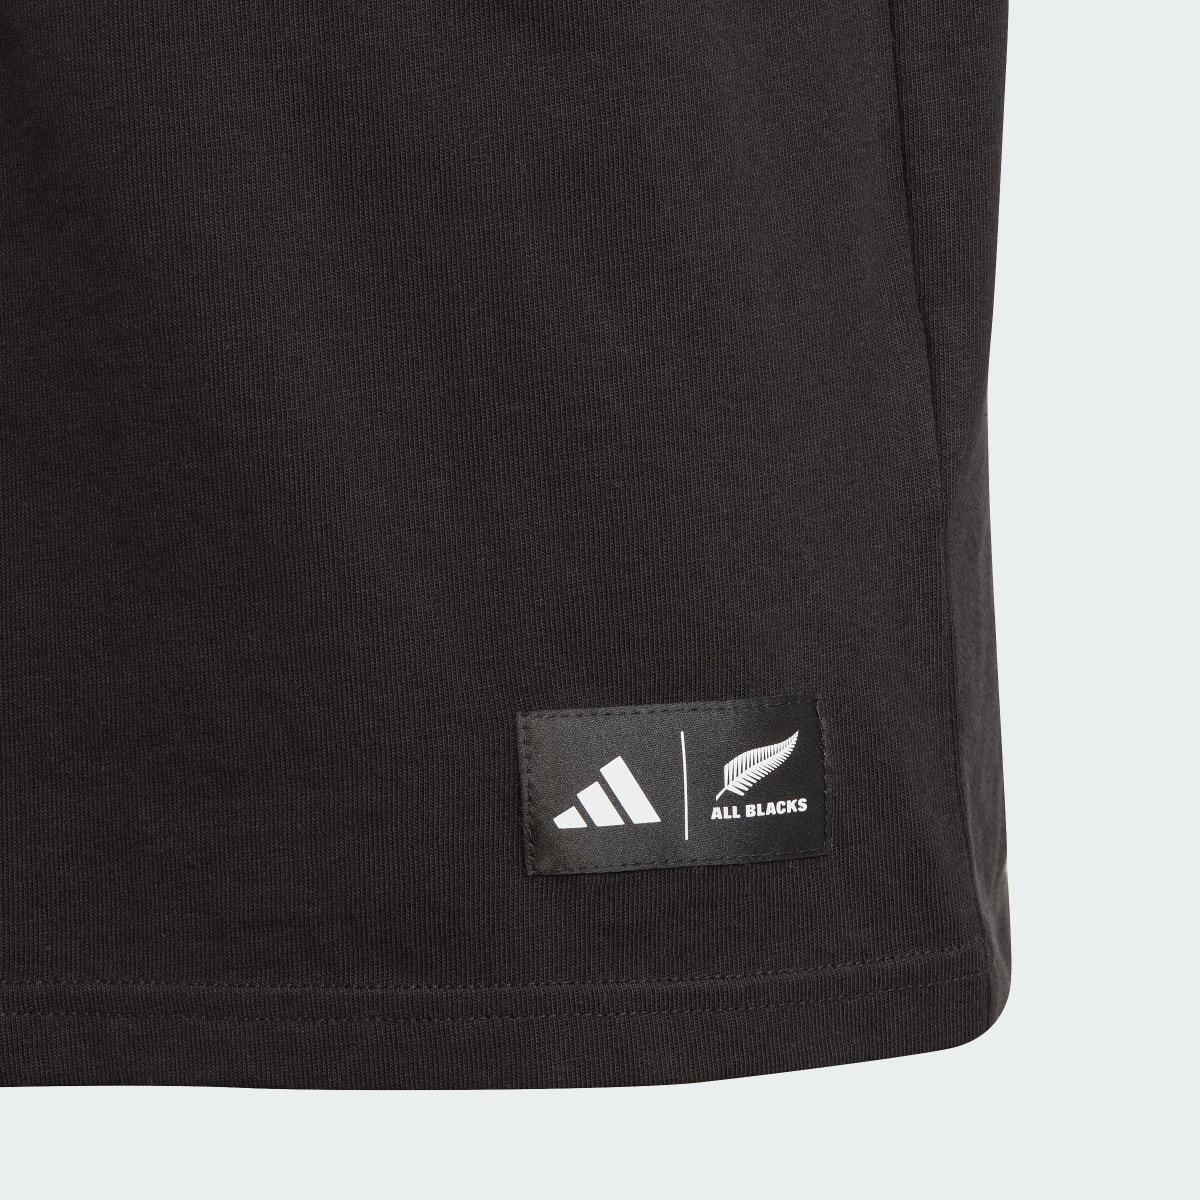 Adidas T-shirt Graphic All Blacks. 4